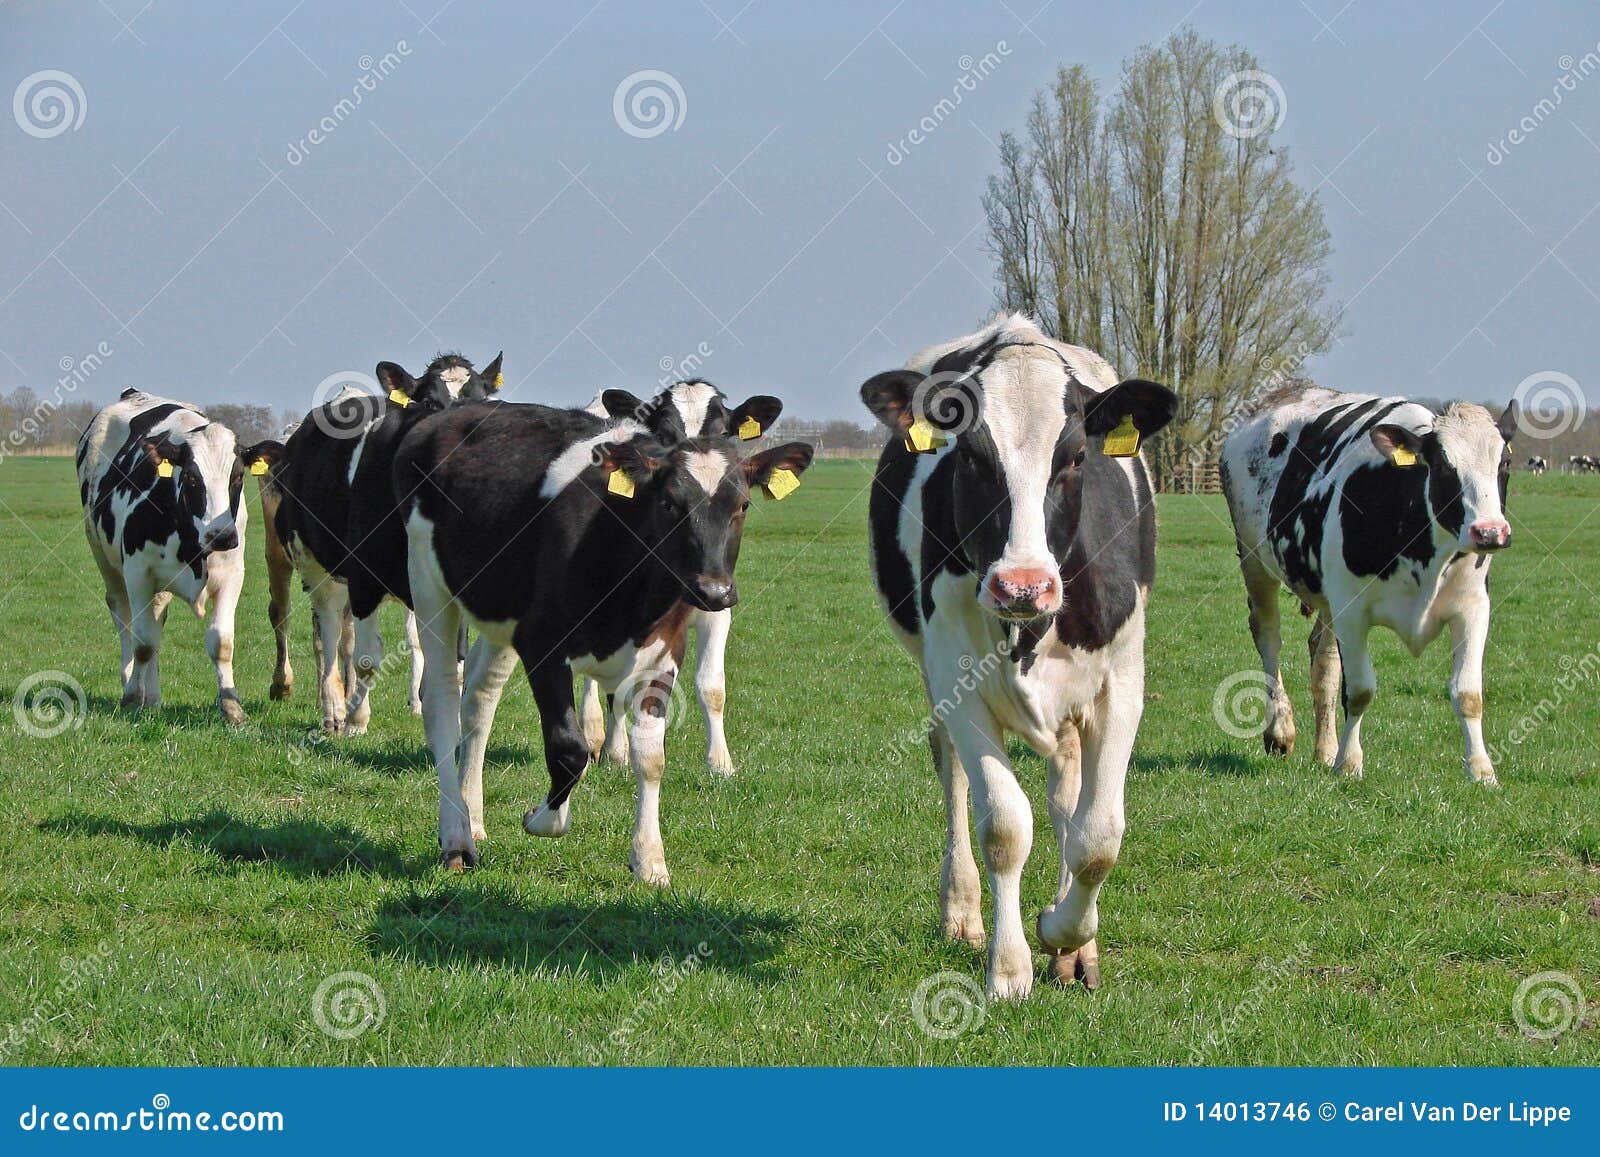 dutch cows in morning sun